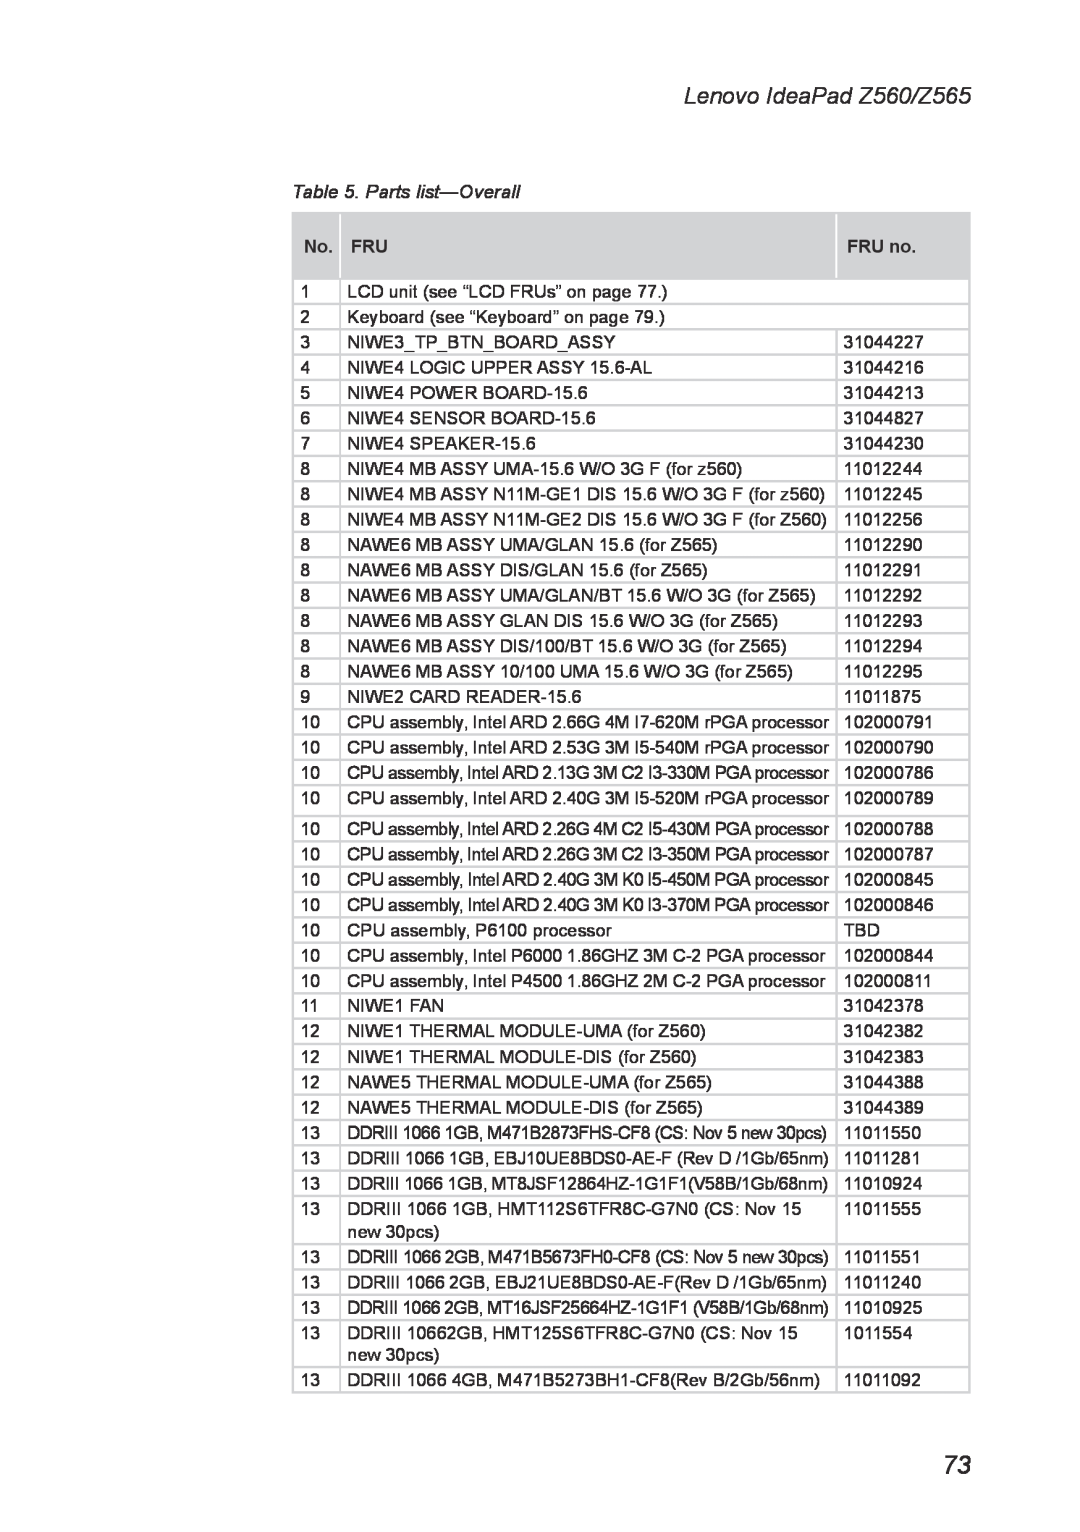 Lenovo manual Parts list-Overall, Lenovo IdeaPad Z560/Z565, No. FRU, FRU no 